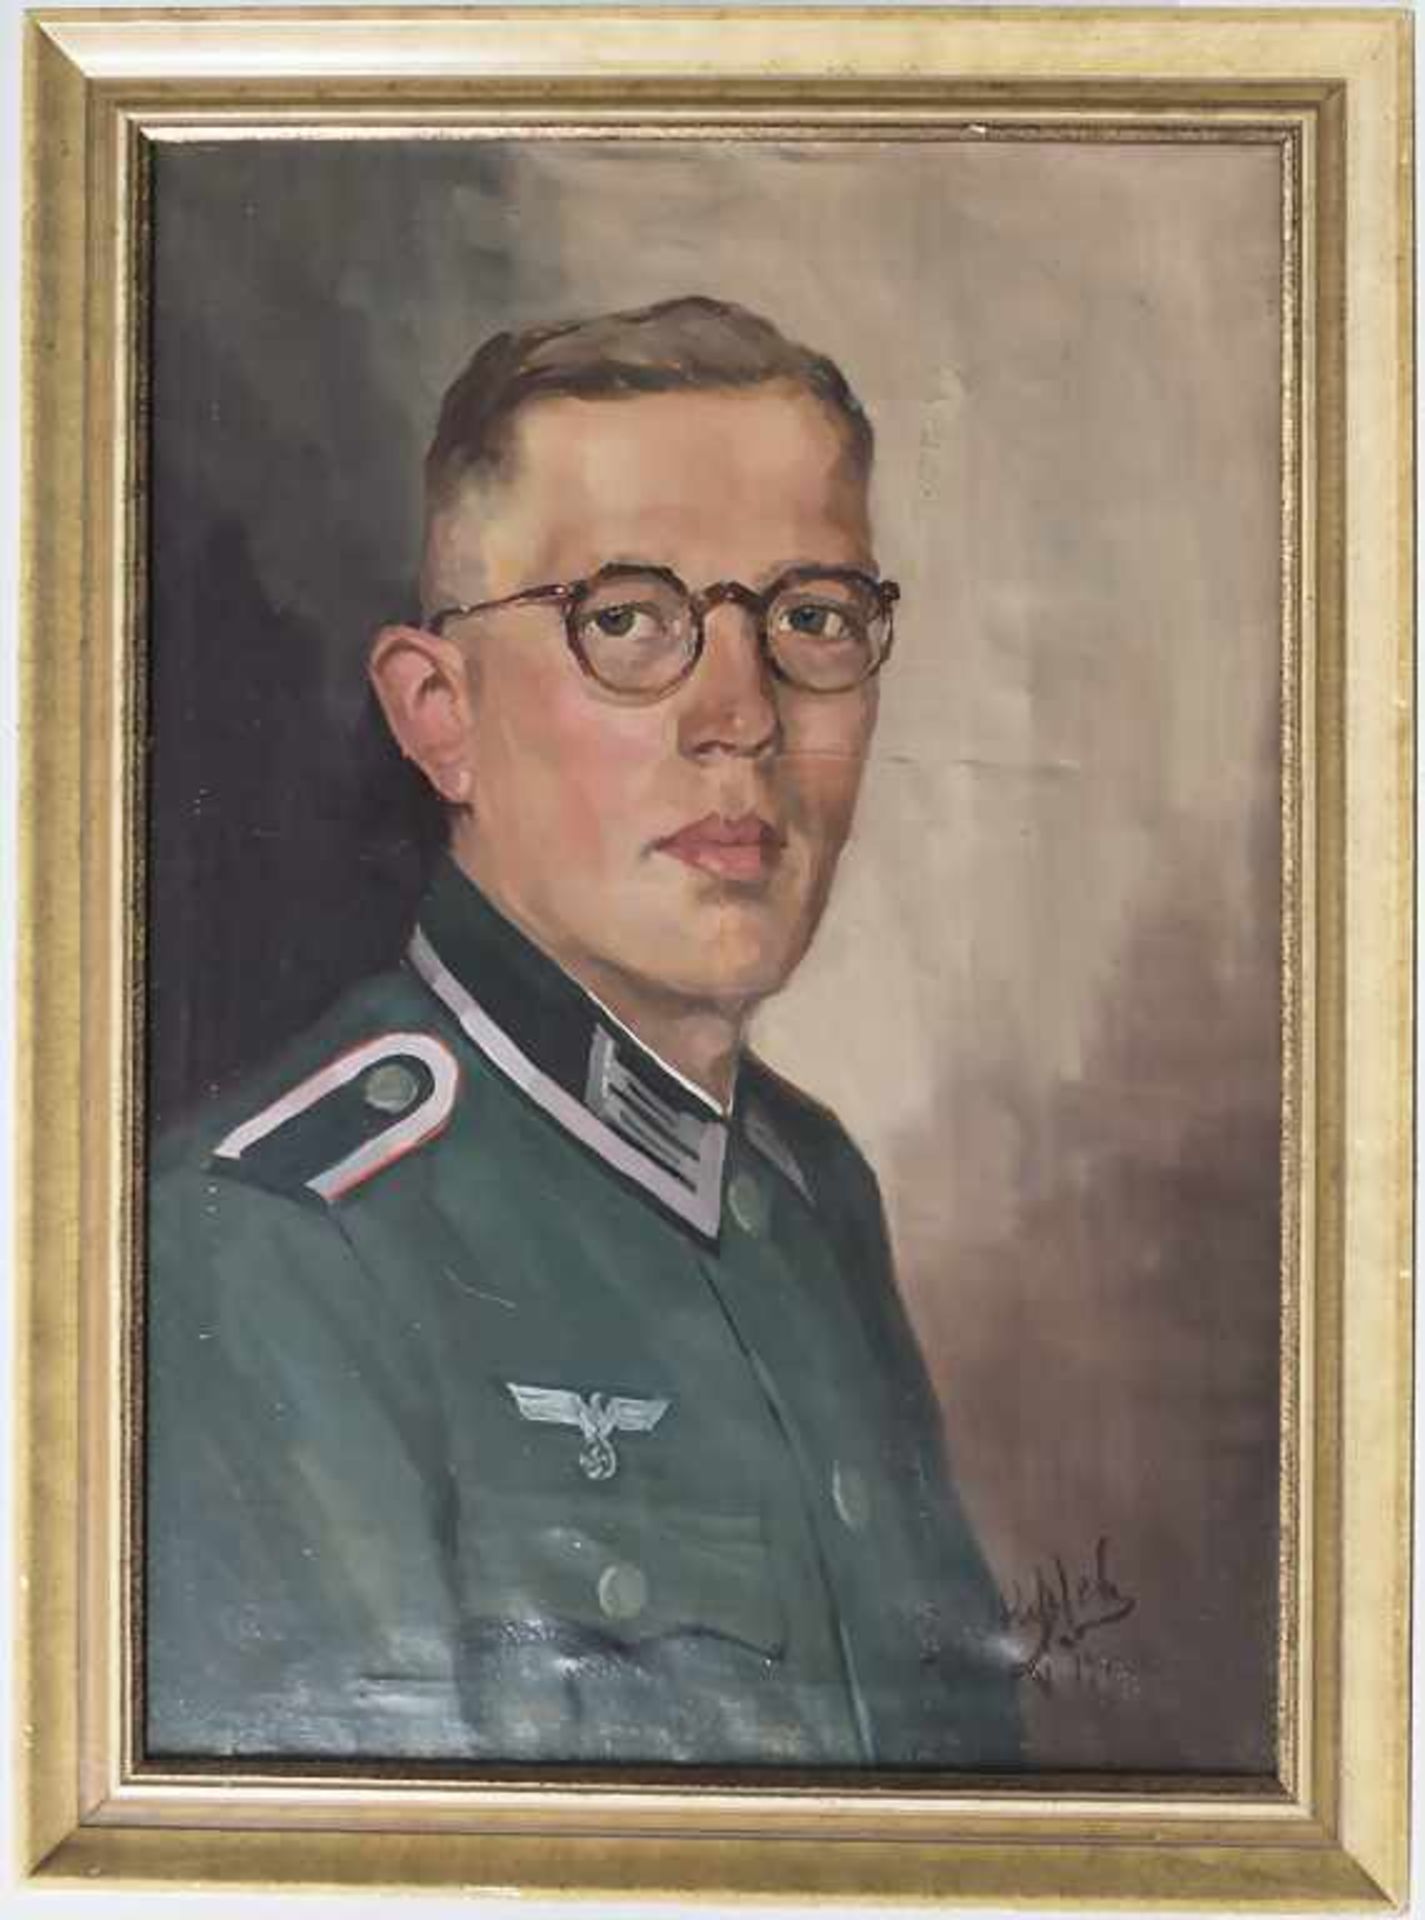 Künstler der 1930/40er Jahre, 'Soldat des 3. Reiches' / 'Soldier of the Third Reich' - Bild 2 aus 7